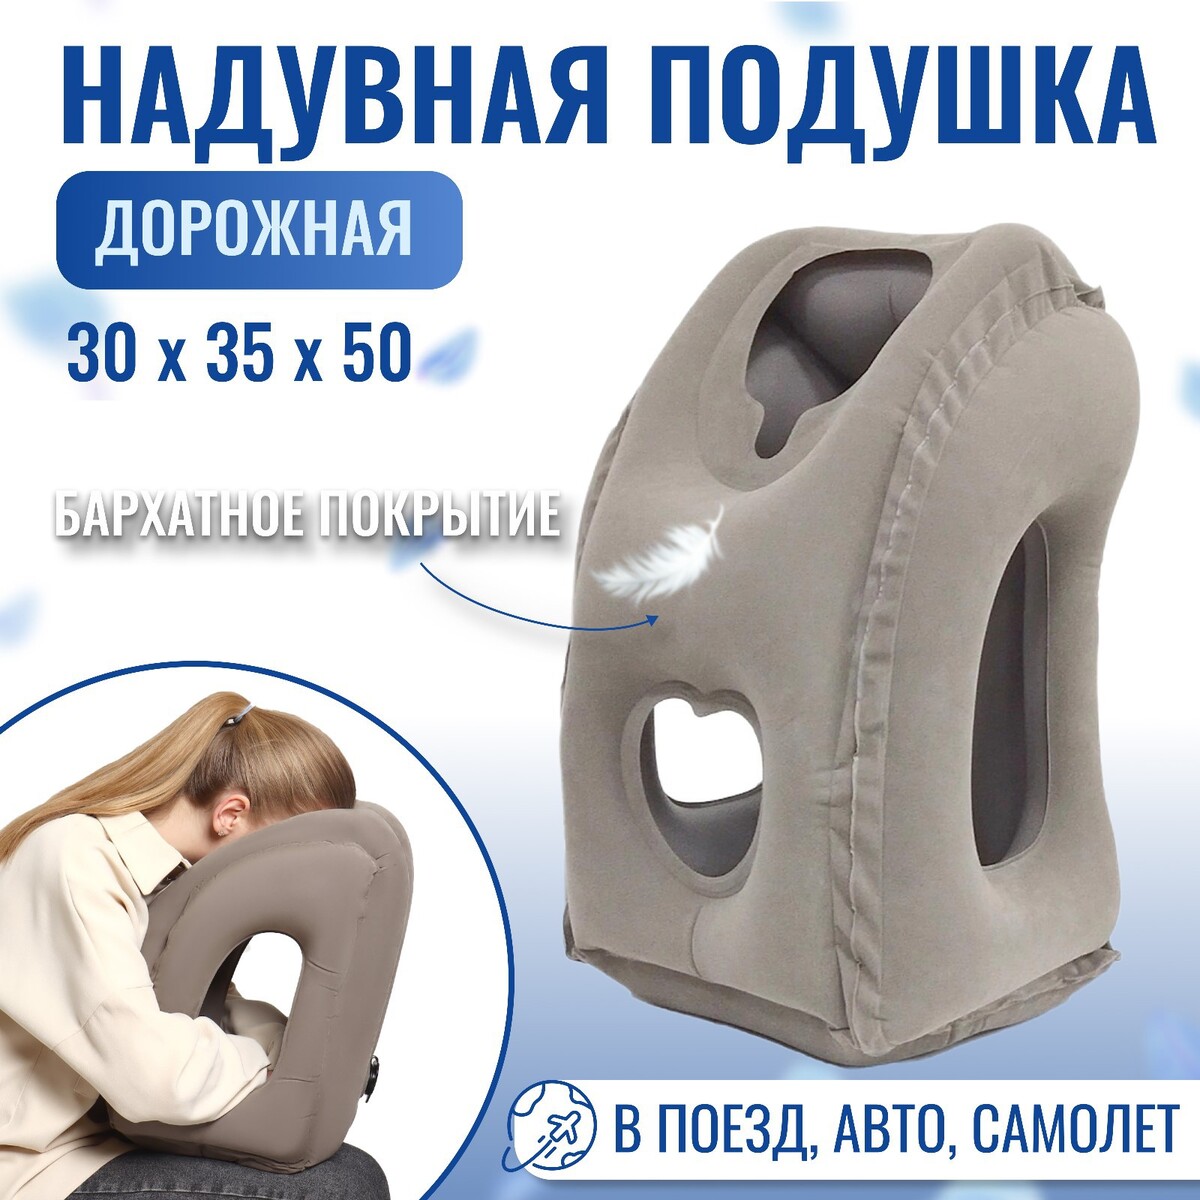 Подушка надувная, 50 × 35 × 30 см, в чехле, цвет серый подушка для шеи дорожная надувная 42 × 27 см синий